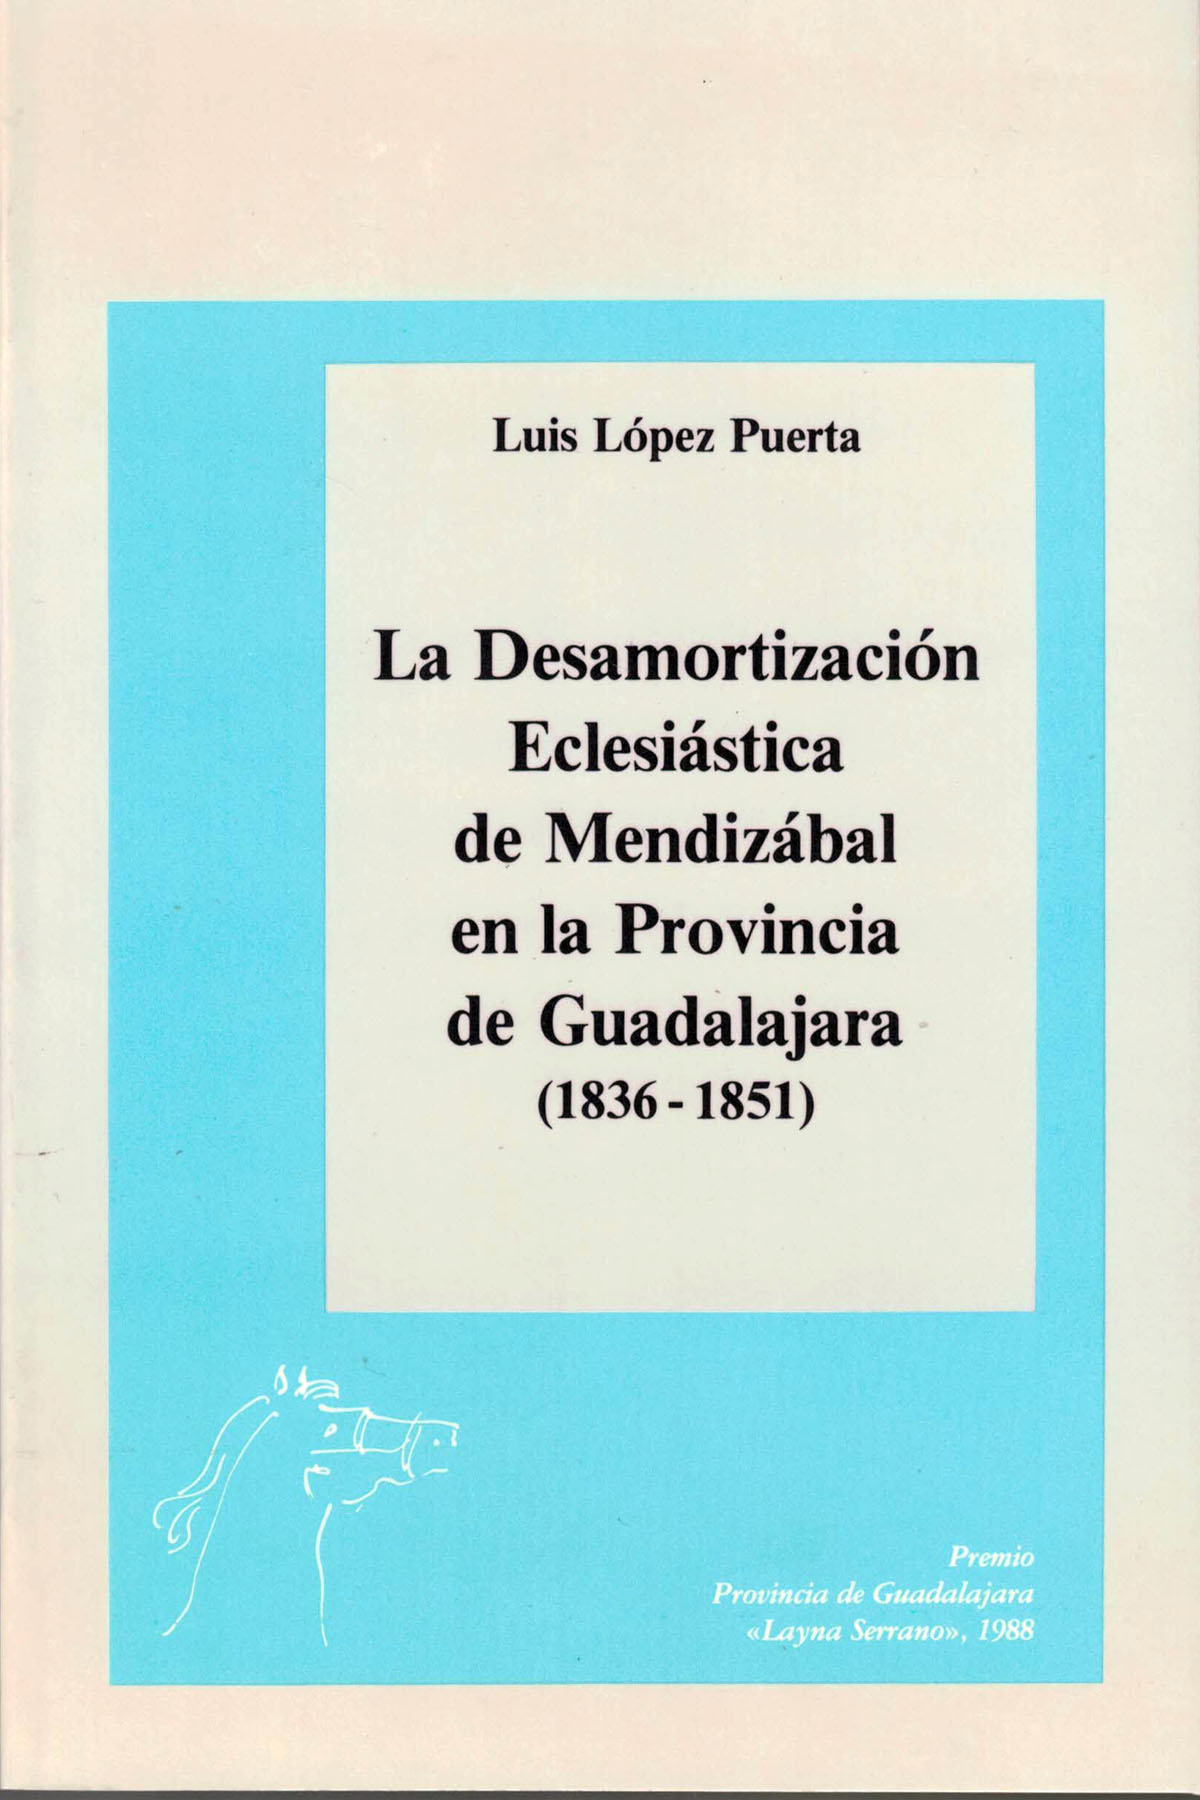 La Desamortizacion Eclesiastica de Mendizabal en la provincia de Guadalajara